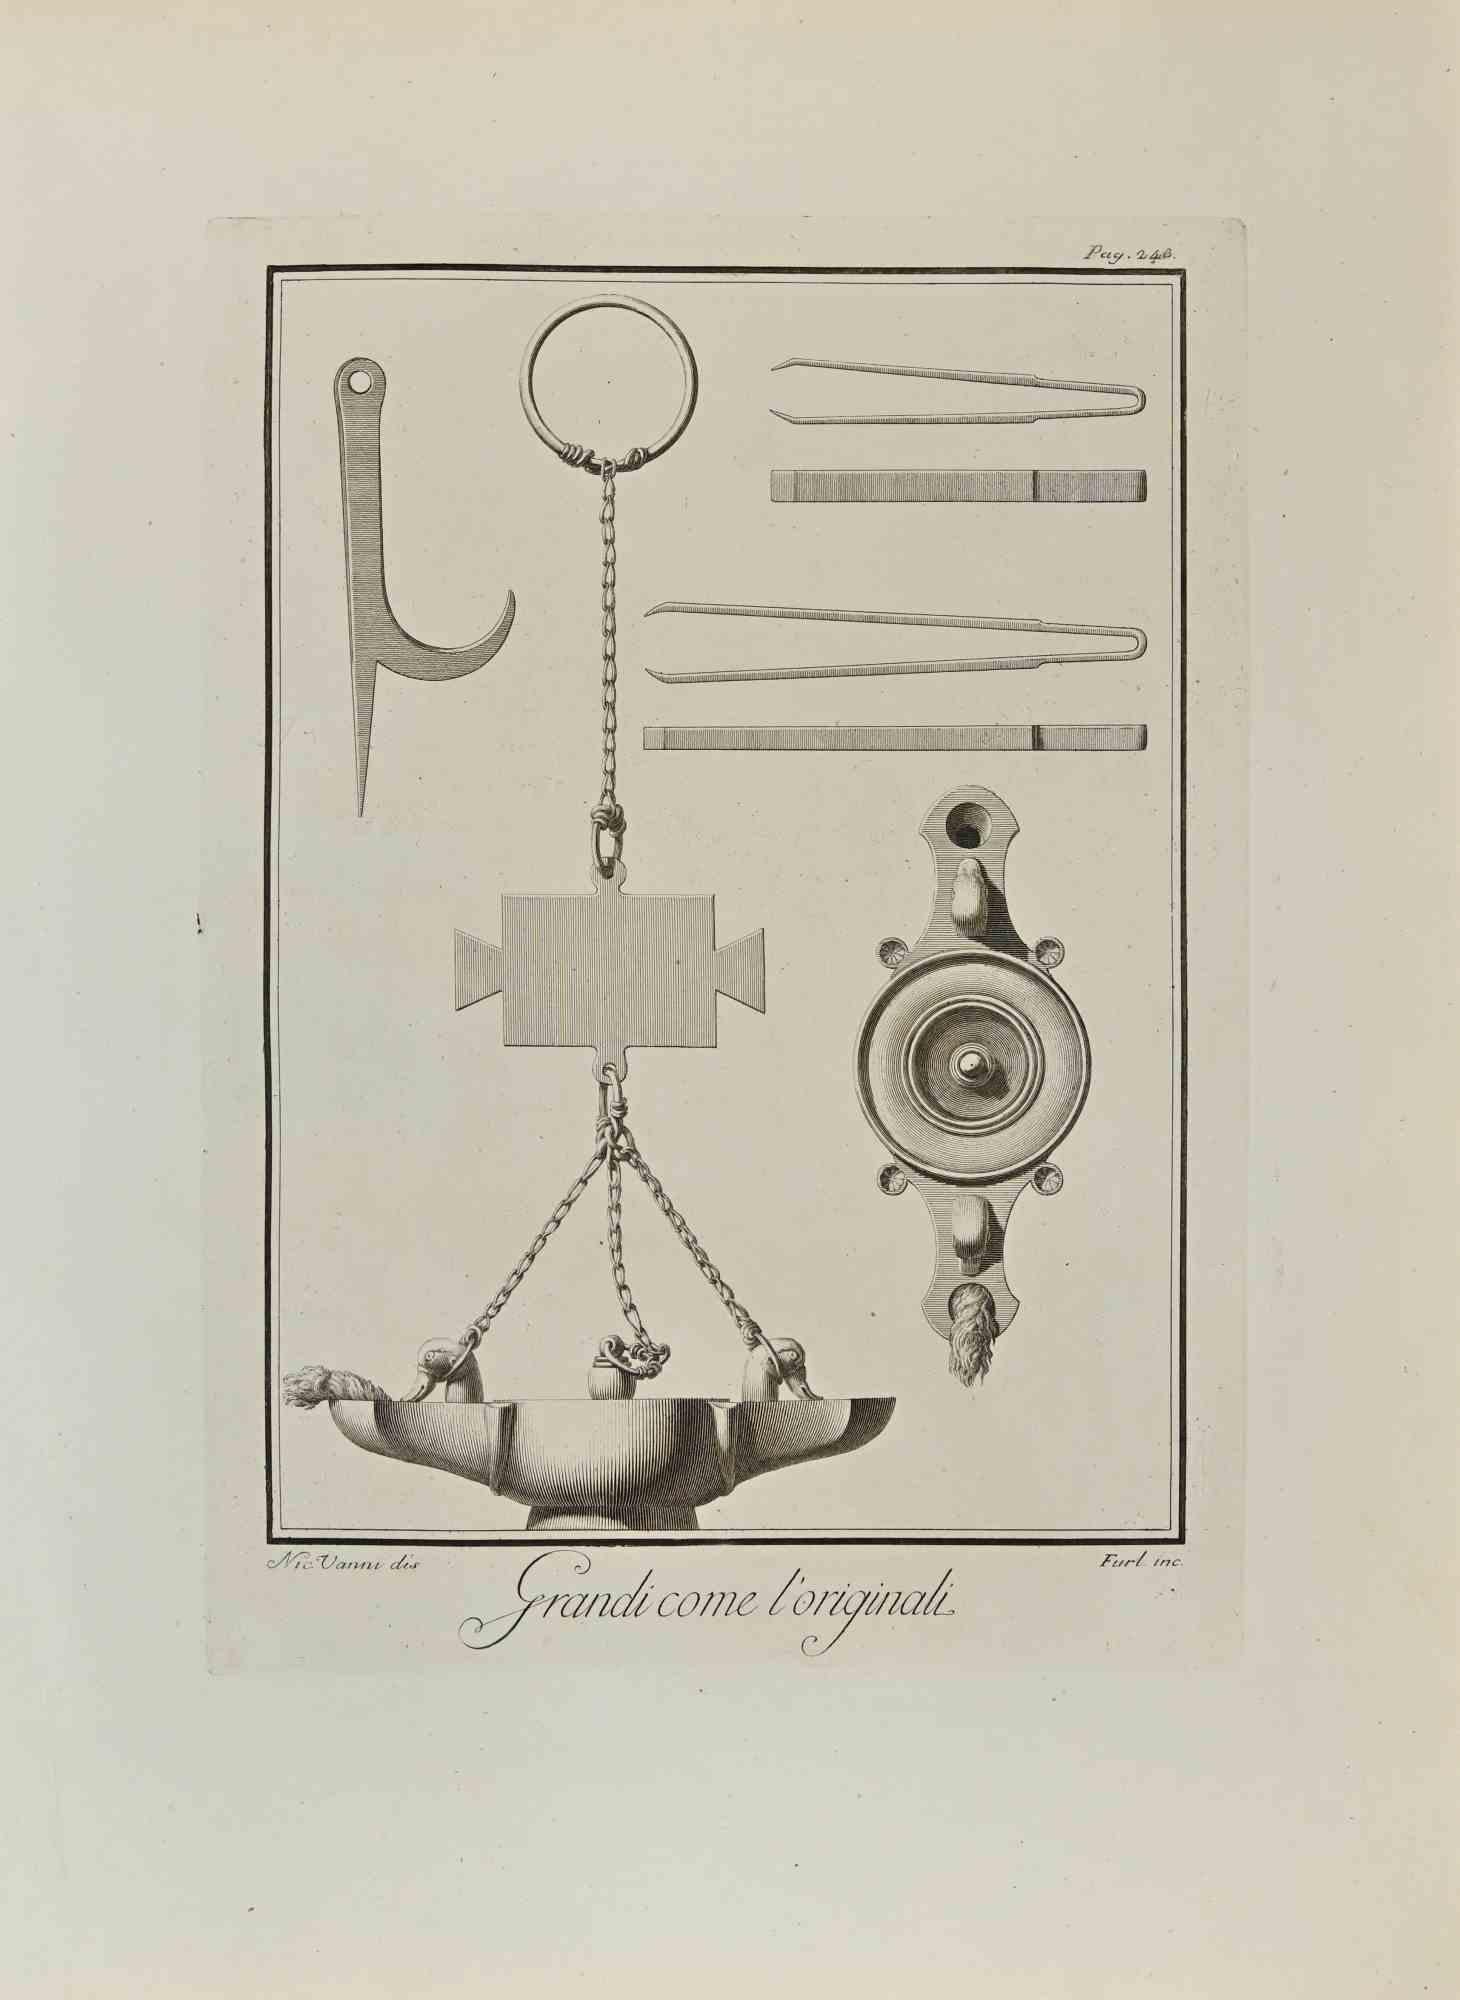 Chirurgische Gegenstände und Öllampe aus den "Altertümern von Herculaneum" ist eine Radierung auf Papier von Nicola Vanni aus dem 18. Jahrhundert.

Signiert auf der Platte.

Guter Zustand mit einigen Faltungen.

Die Radierung gehört zu der